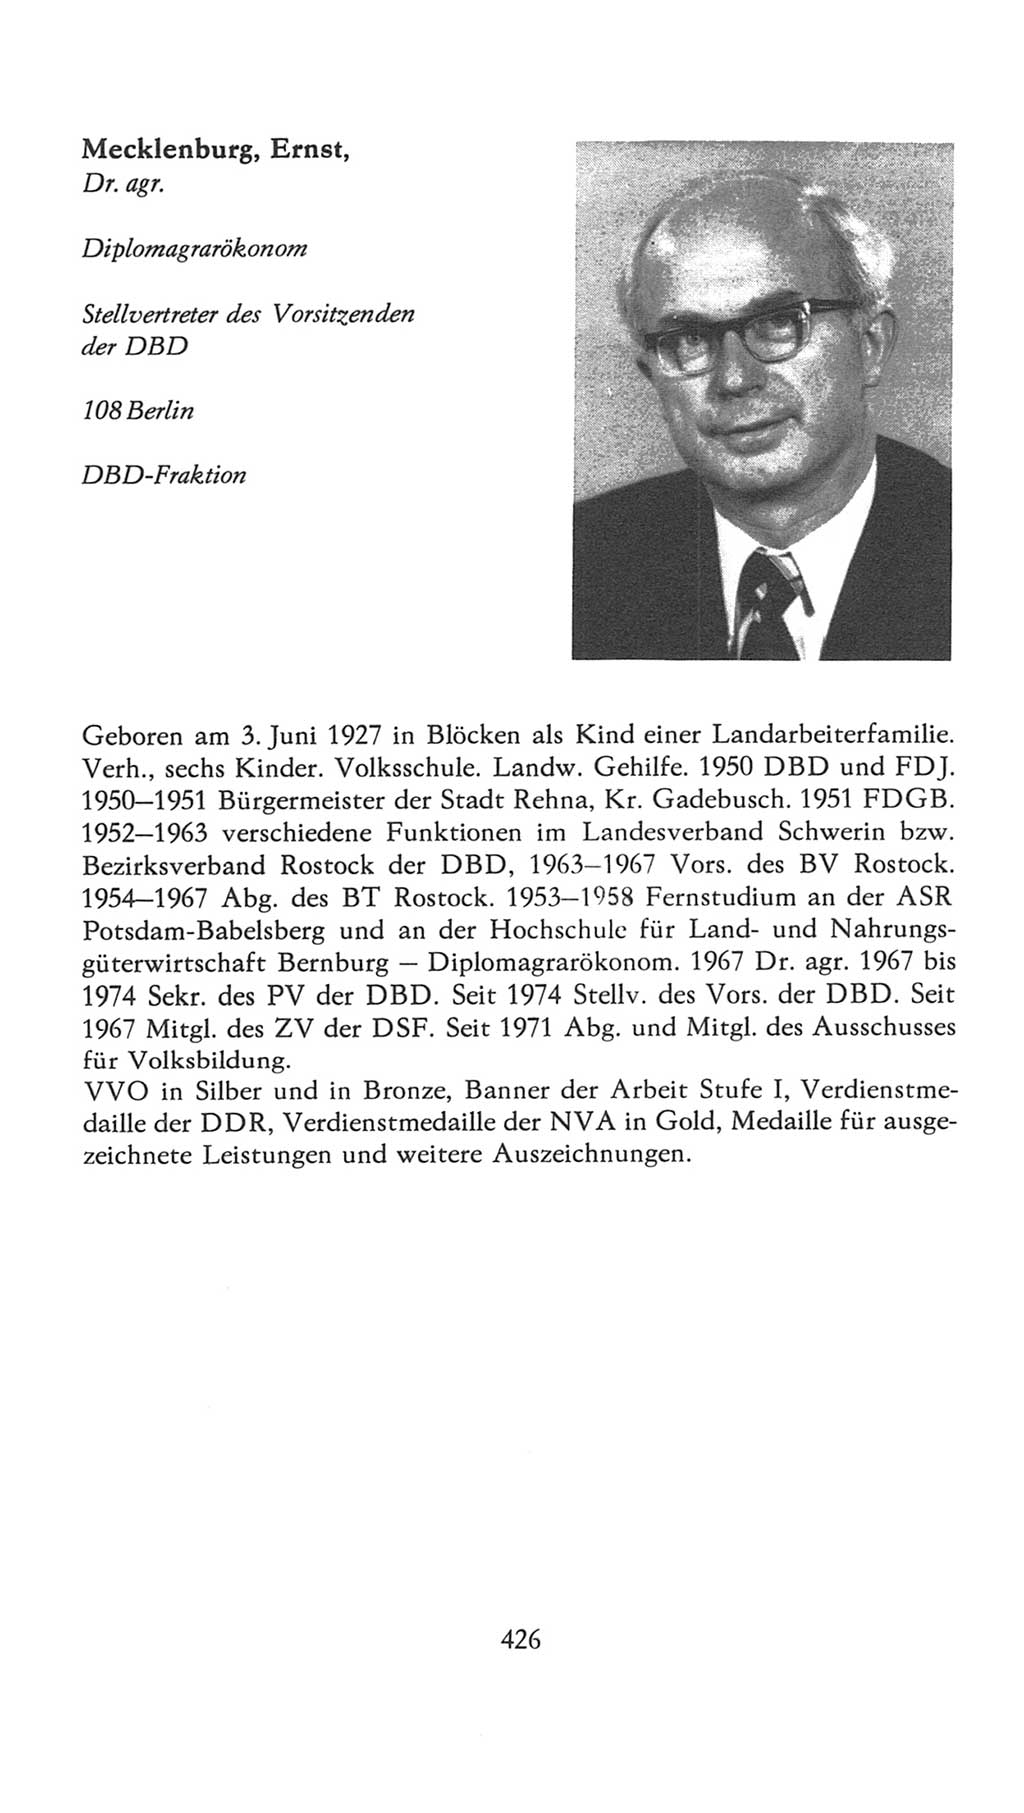 Volkskammer (VK) der Deutschen Demokratischen Republik (DDR), 7. Wahlperiode 1976-1981, Seite 426 (VK. DDR 7. WP. 1976-1981, S. 426)